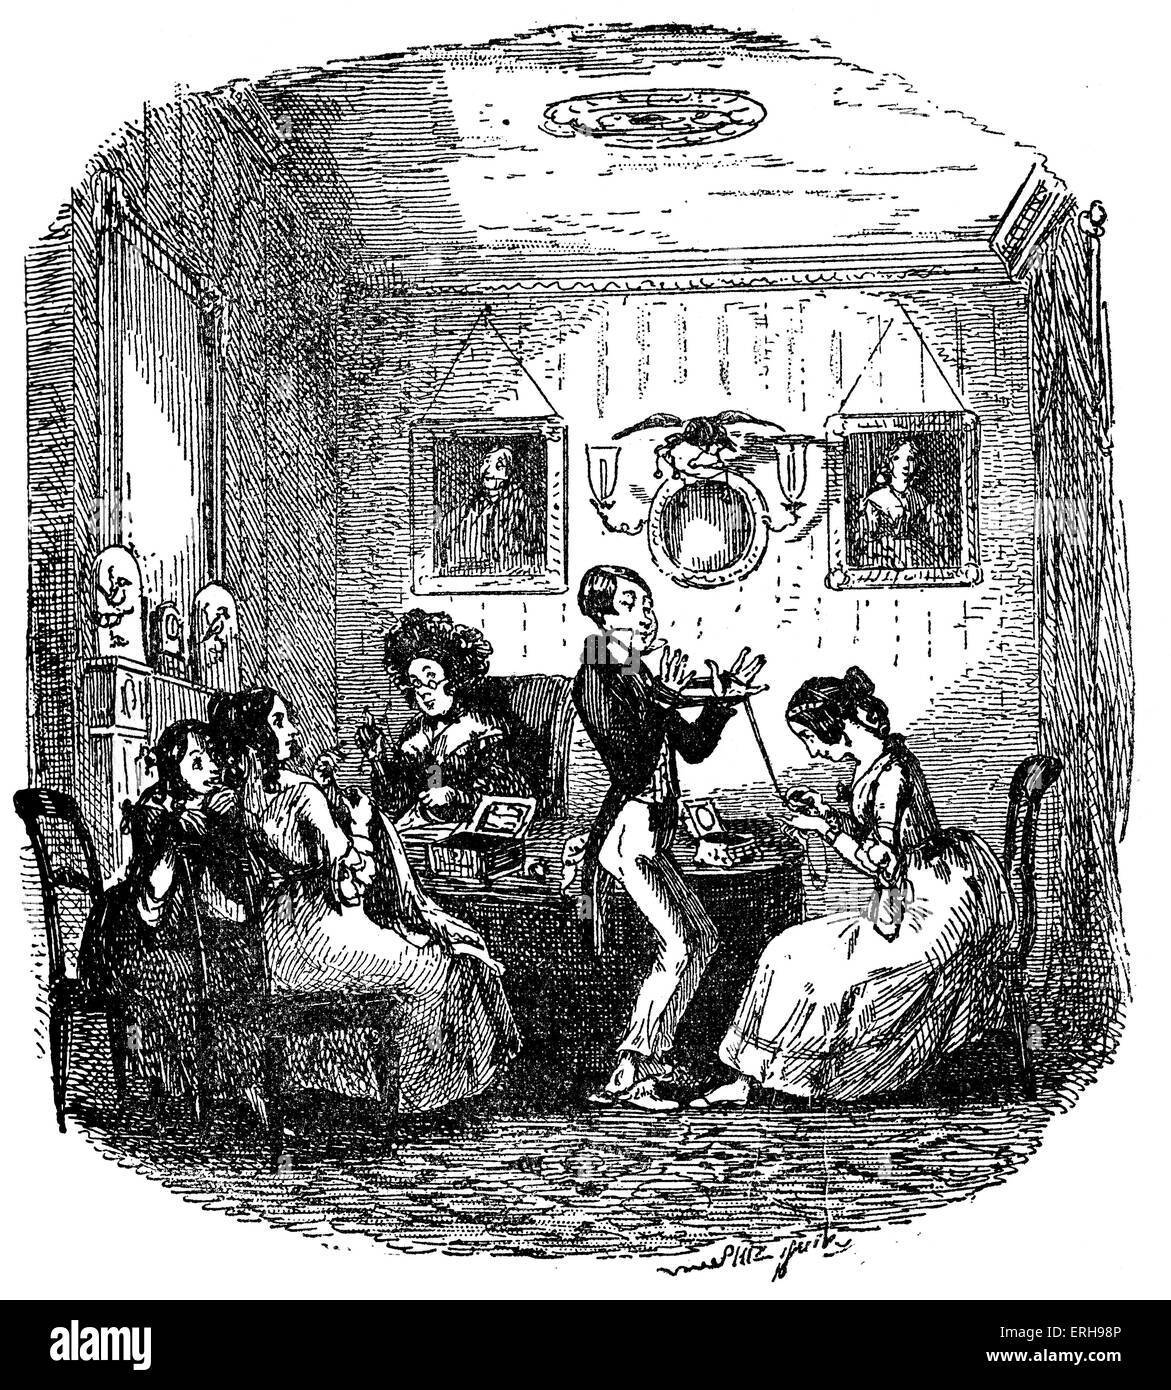 Skizzen von Boz: Illustrative jeden Tag Leben und Alltagsmenschen von Charles Dickens. Szene: "die einheimischen jungen Gentleman". Stockfoto